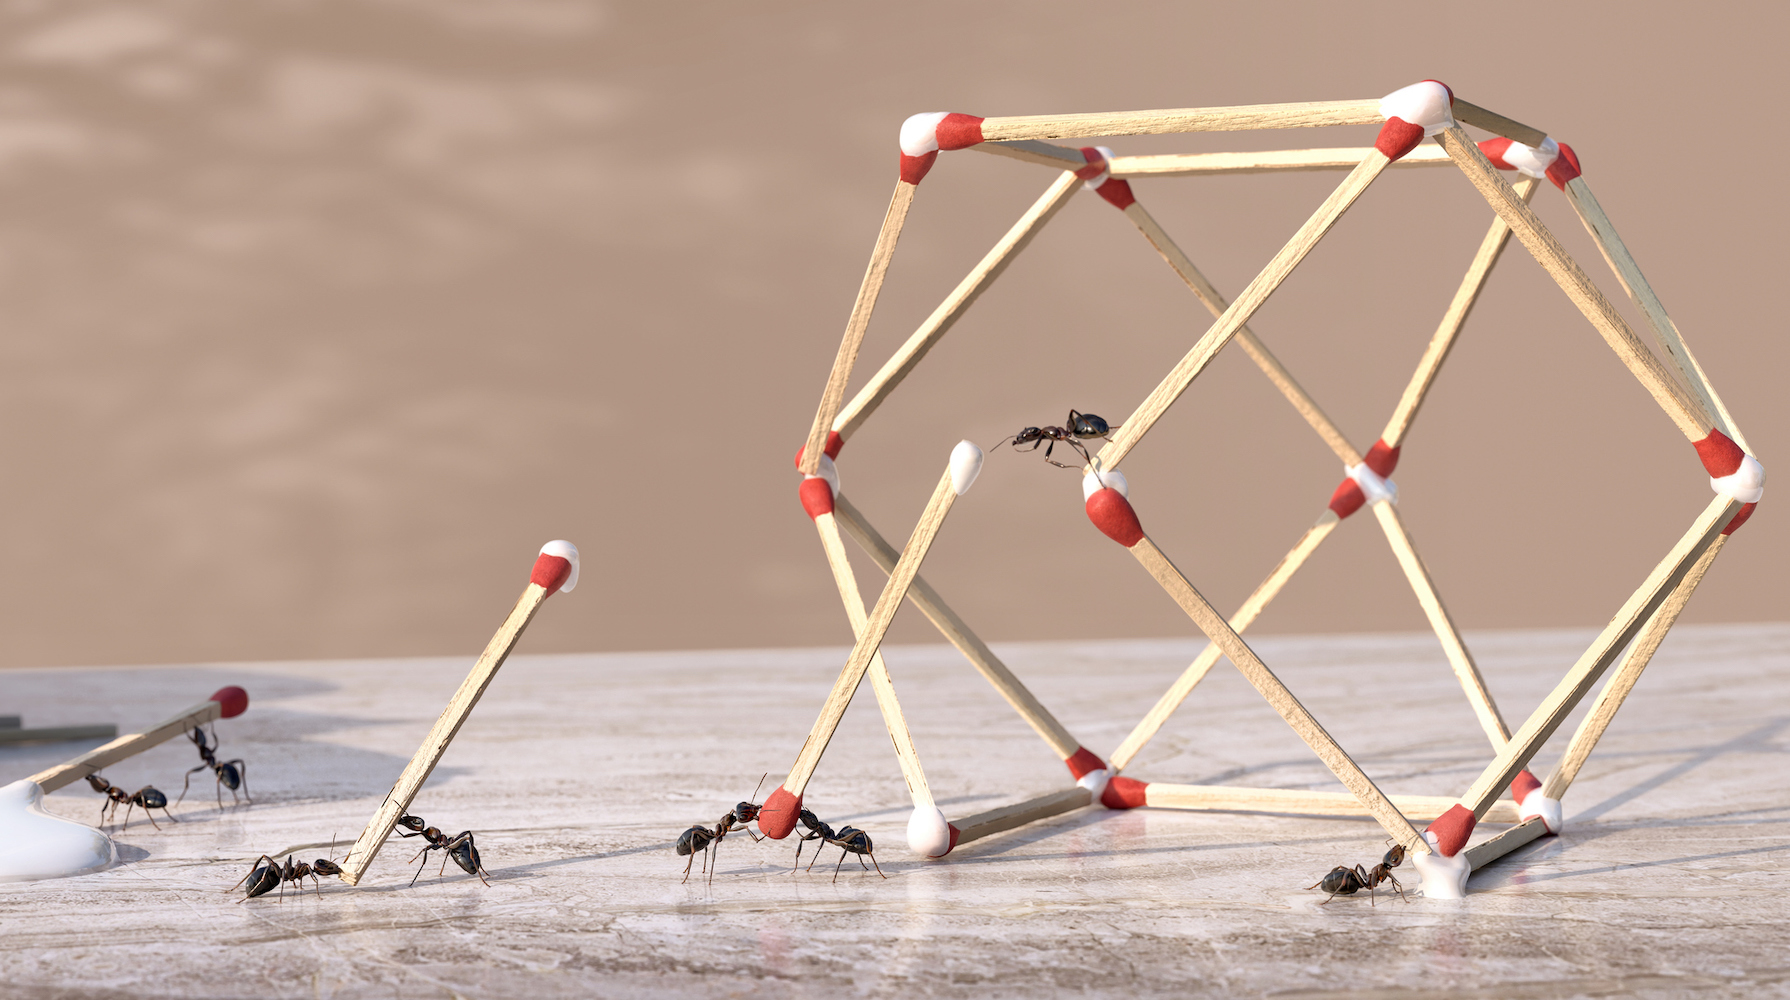 Un grupo de hormigas trabajando en equipo para formar una escultura geométrica tridimensional con pegamento y cerillas.  Las hormigas son extremos de cerillas sumergidas en pegamento que gotea de una botella de pegamento y se colocan en posición para formar la forma sobre una encimera de mármol.